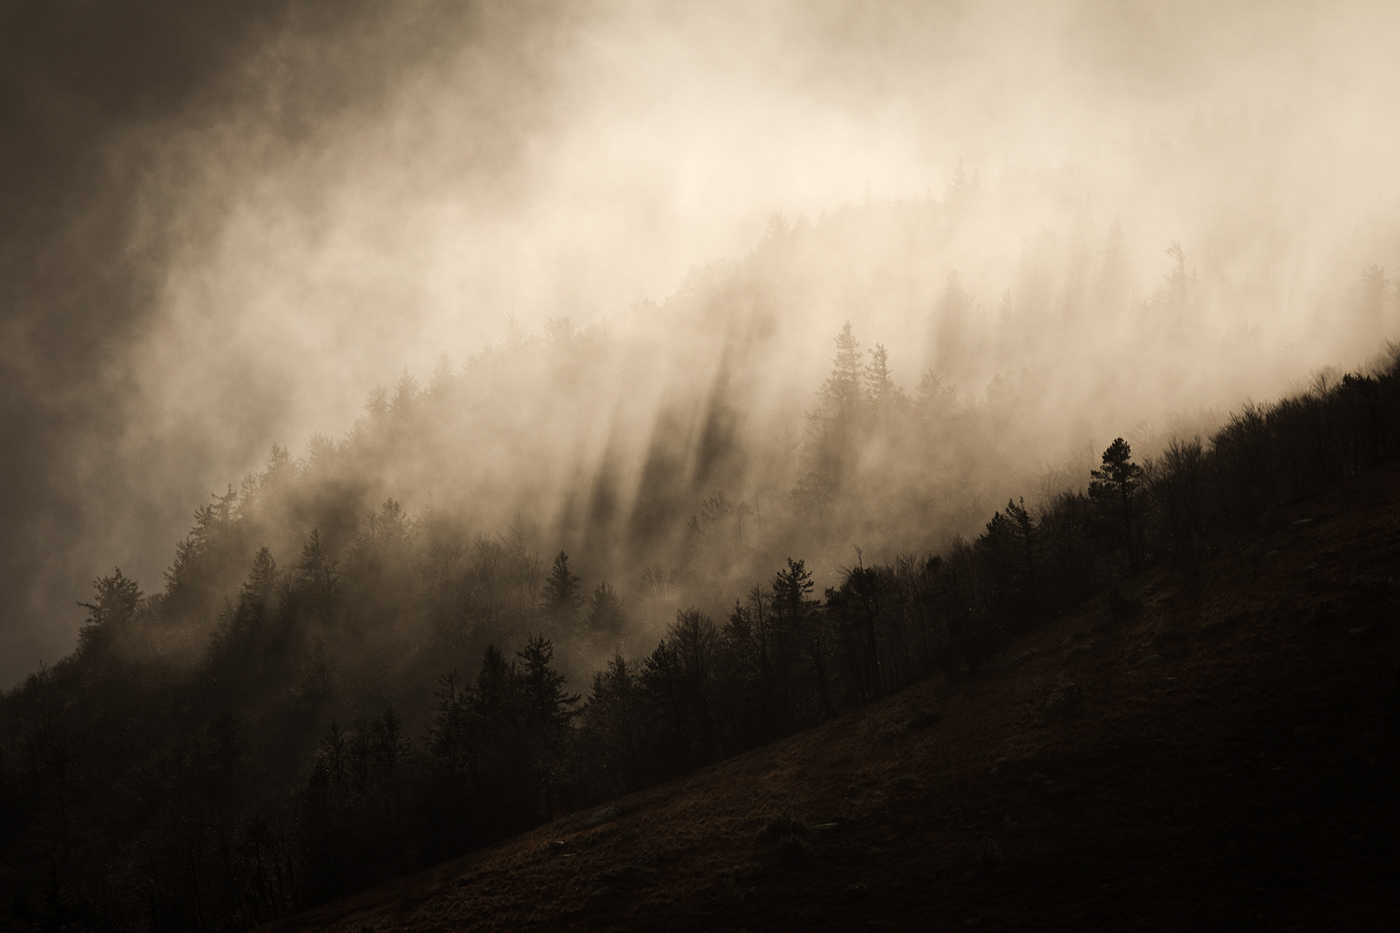 autumn catharsis cévennes forest mist rain storm story wind